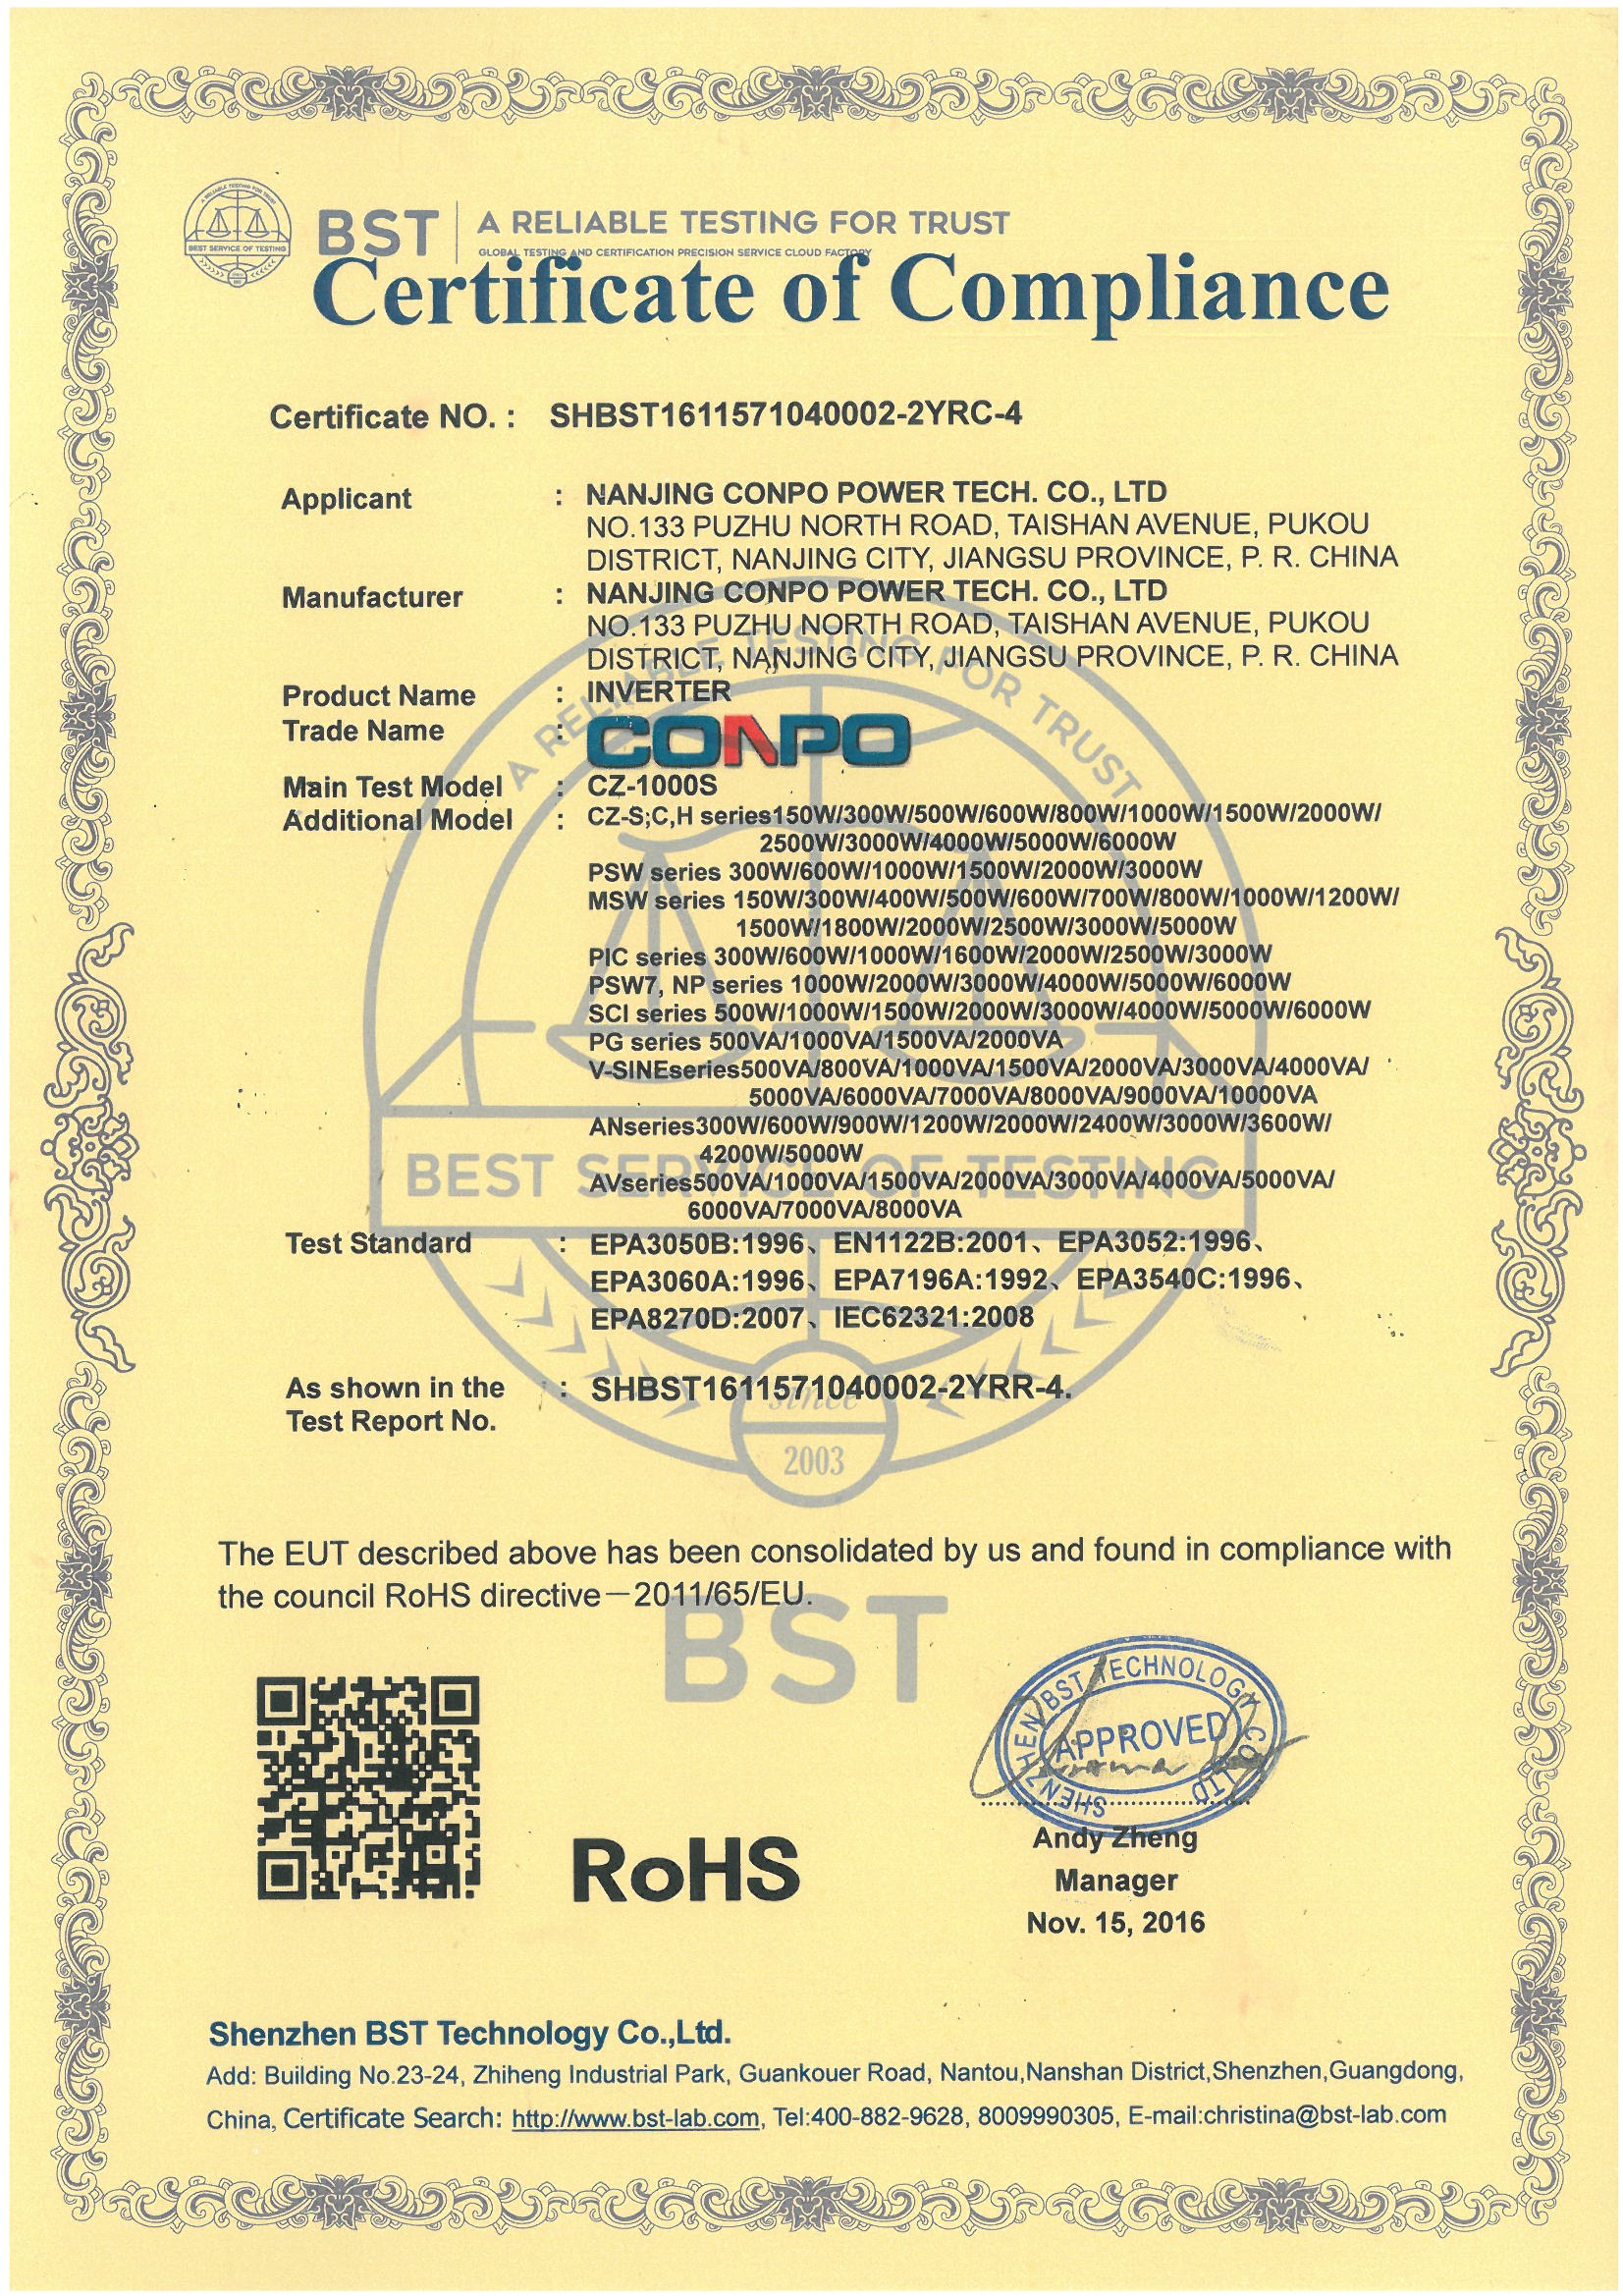 RoHS Certificate for Inverter/IPS/EPS